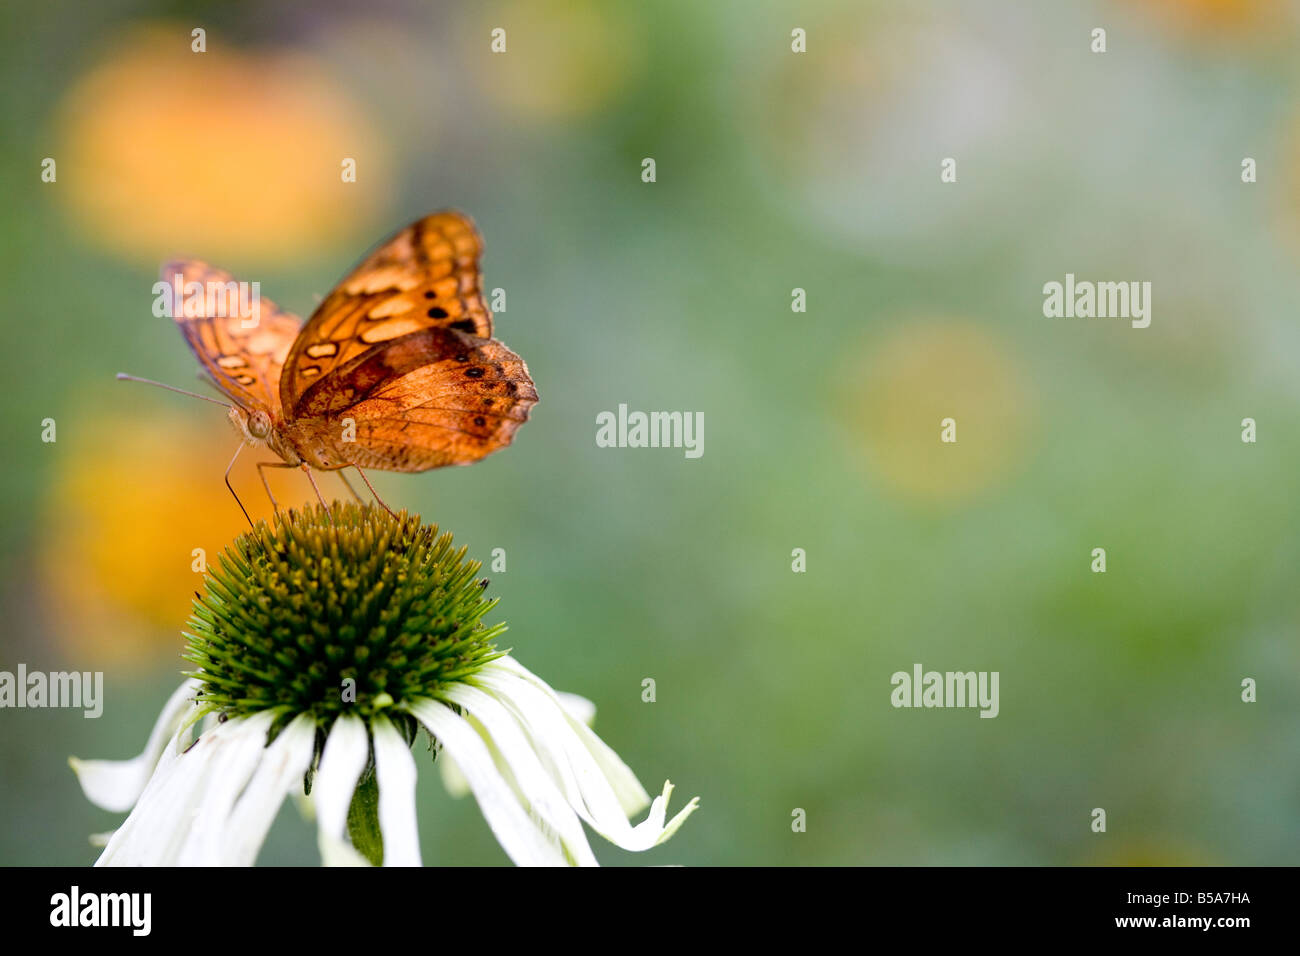 Orange Butterfly on flower Stock Photo